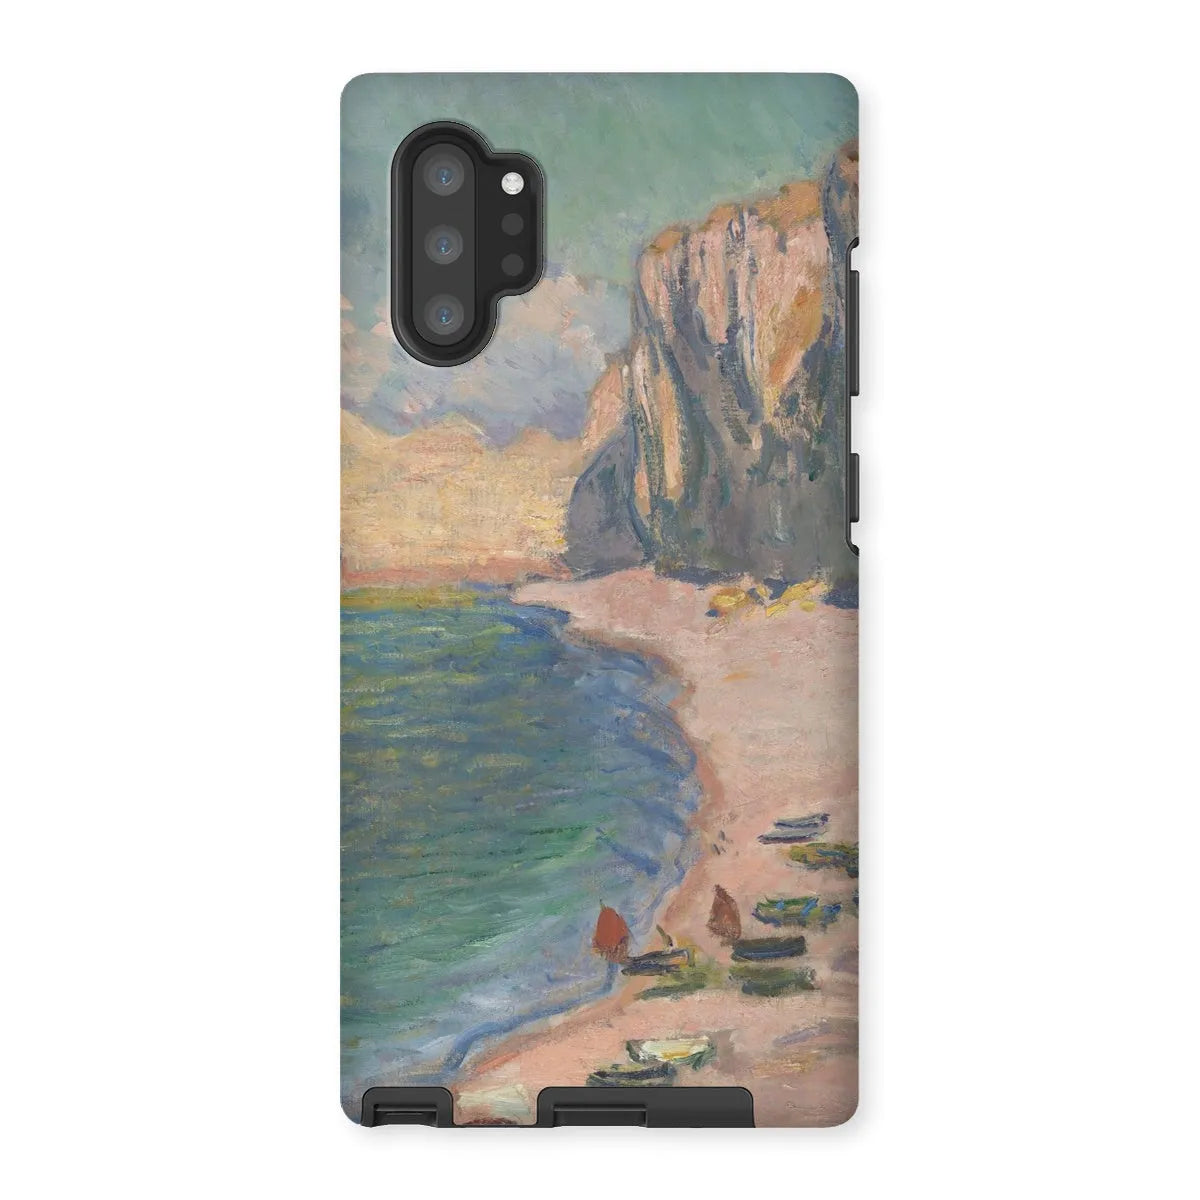 étretat - Impressionist Art Phone Case - Claude Monet - Samsung Galaxy Note 10p / Matte - Mobile Phone Cases